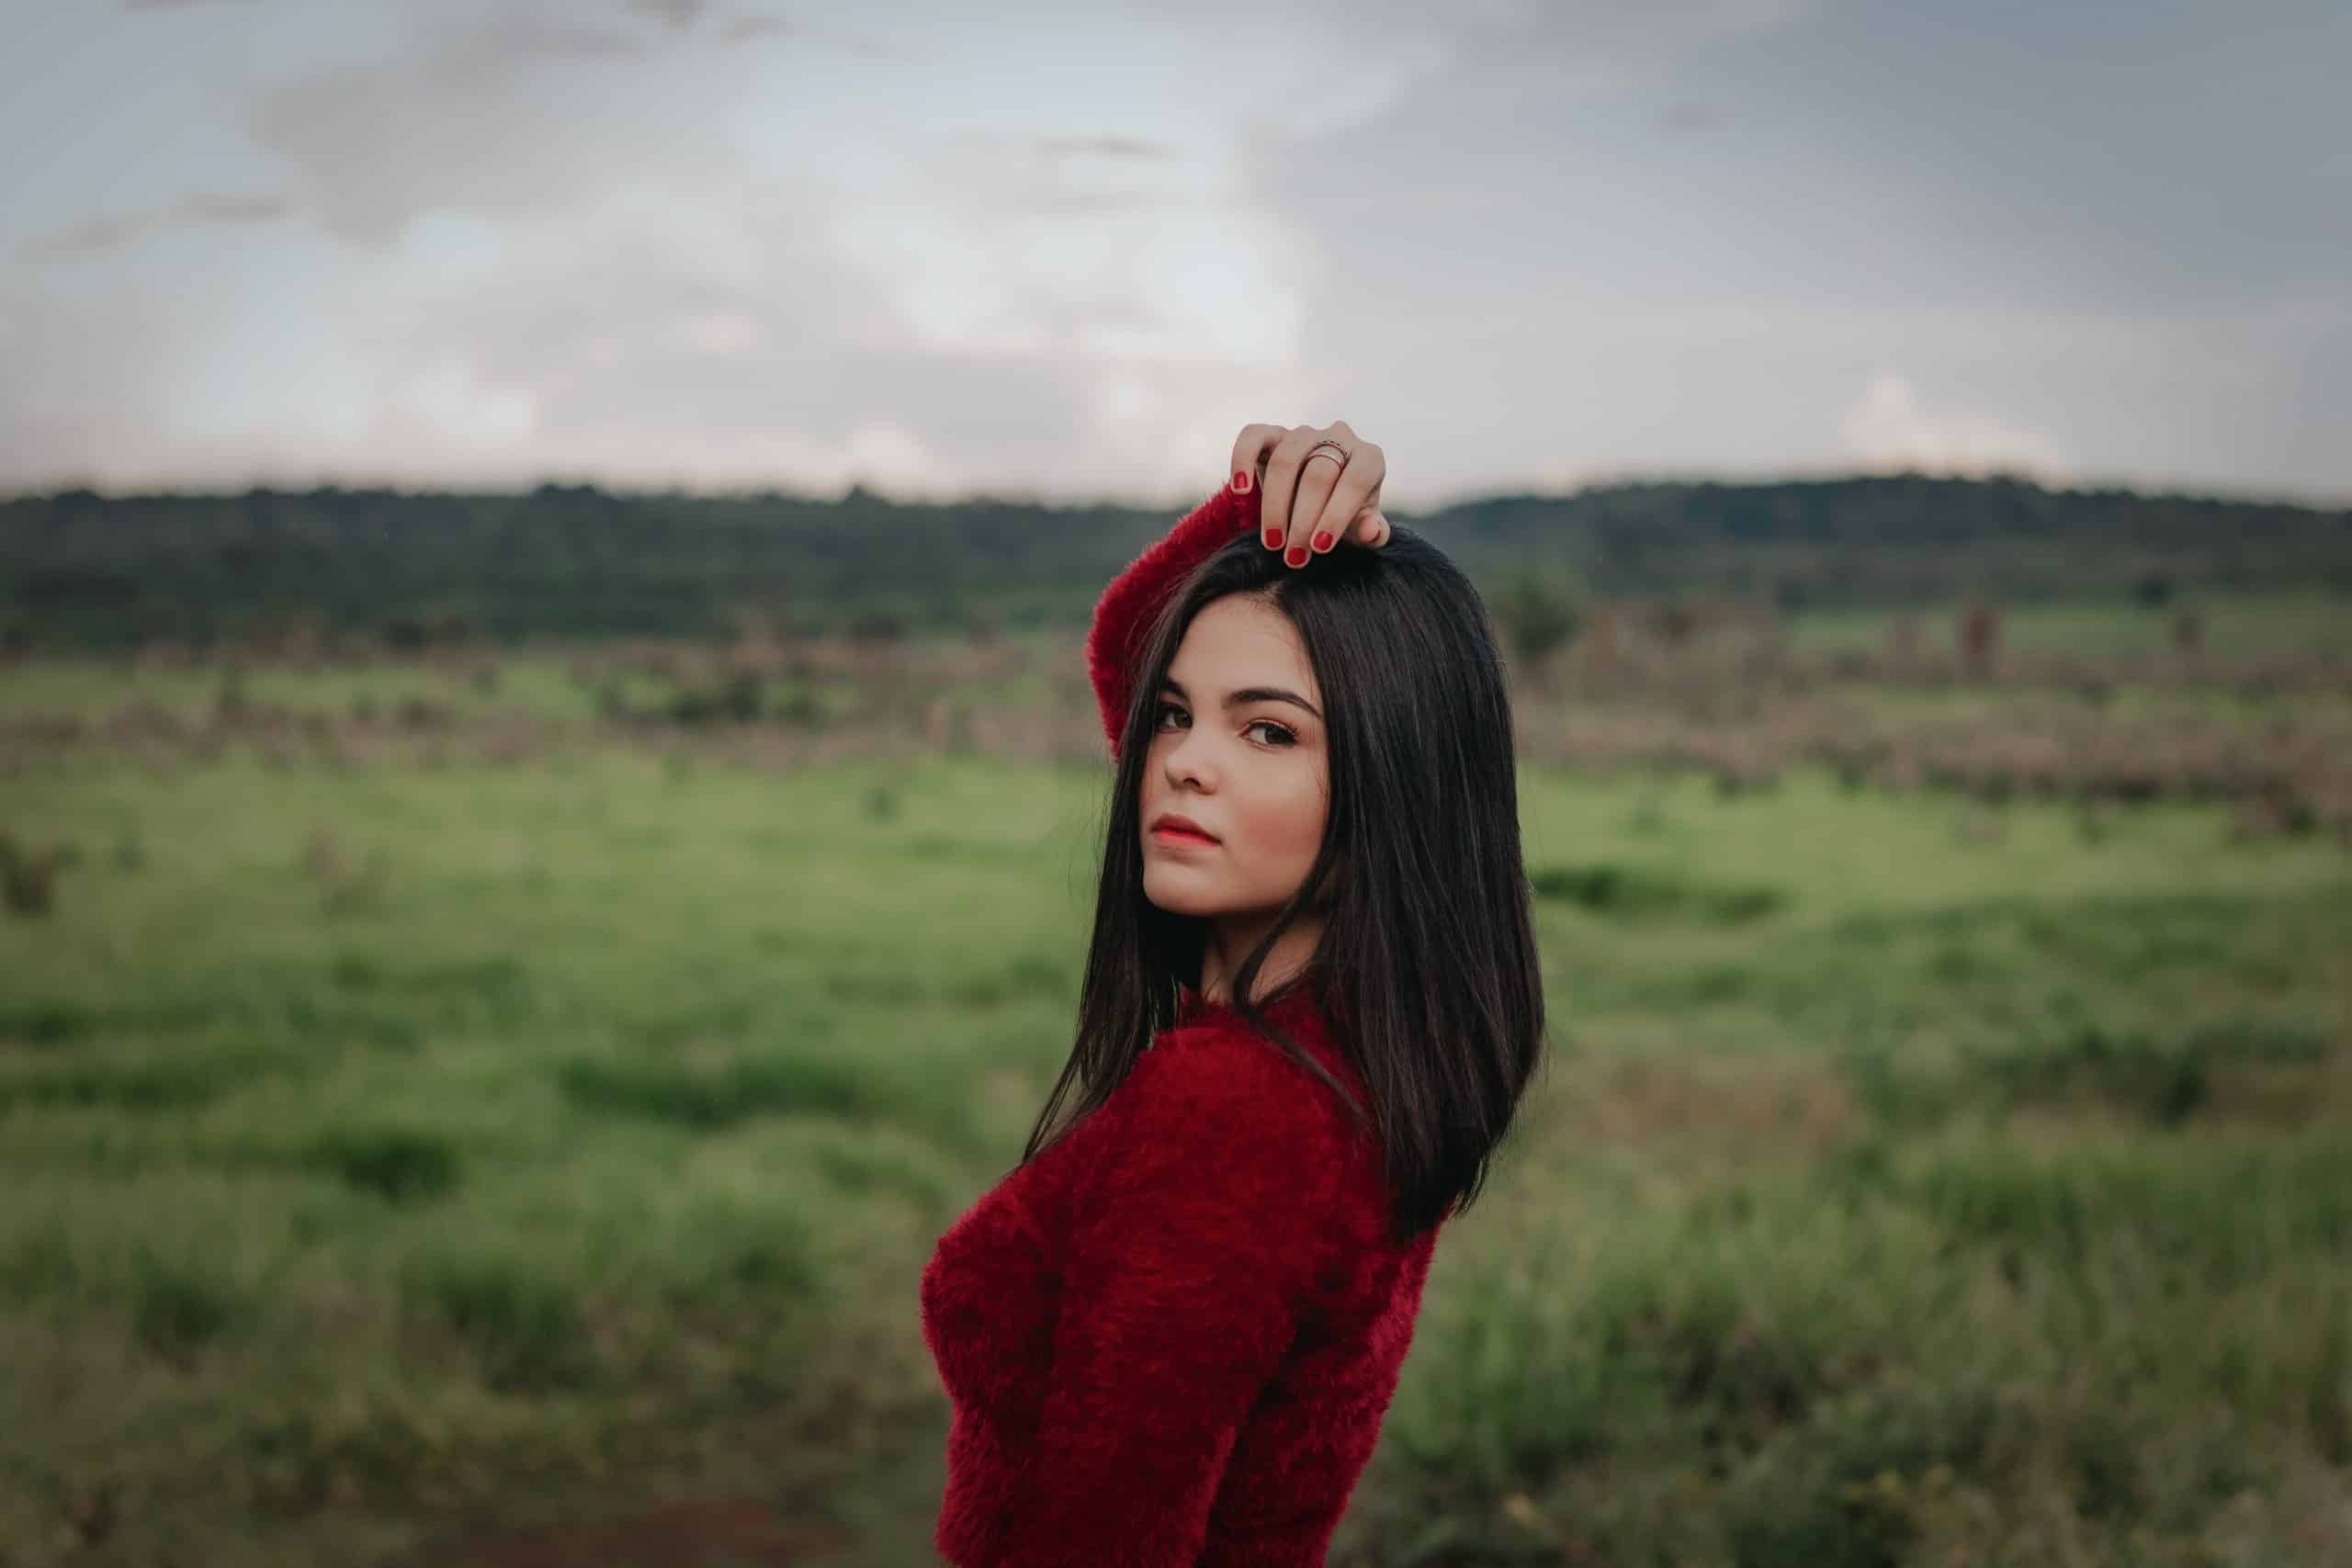 Kvinna i röd tröja som står ensam på grönt gräsfält